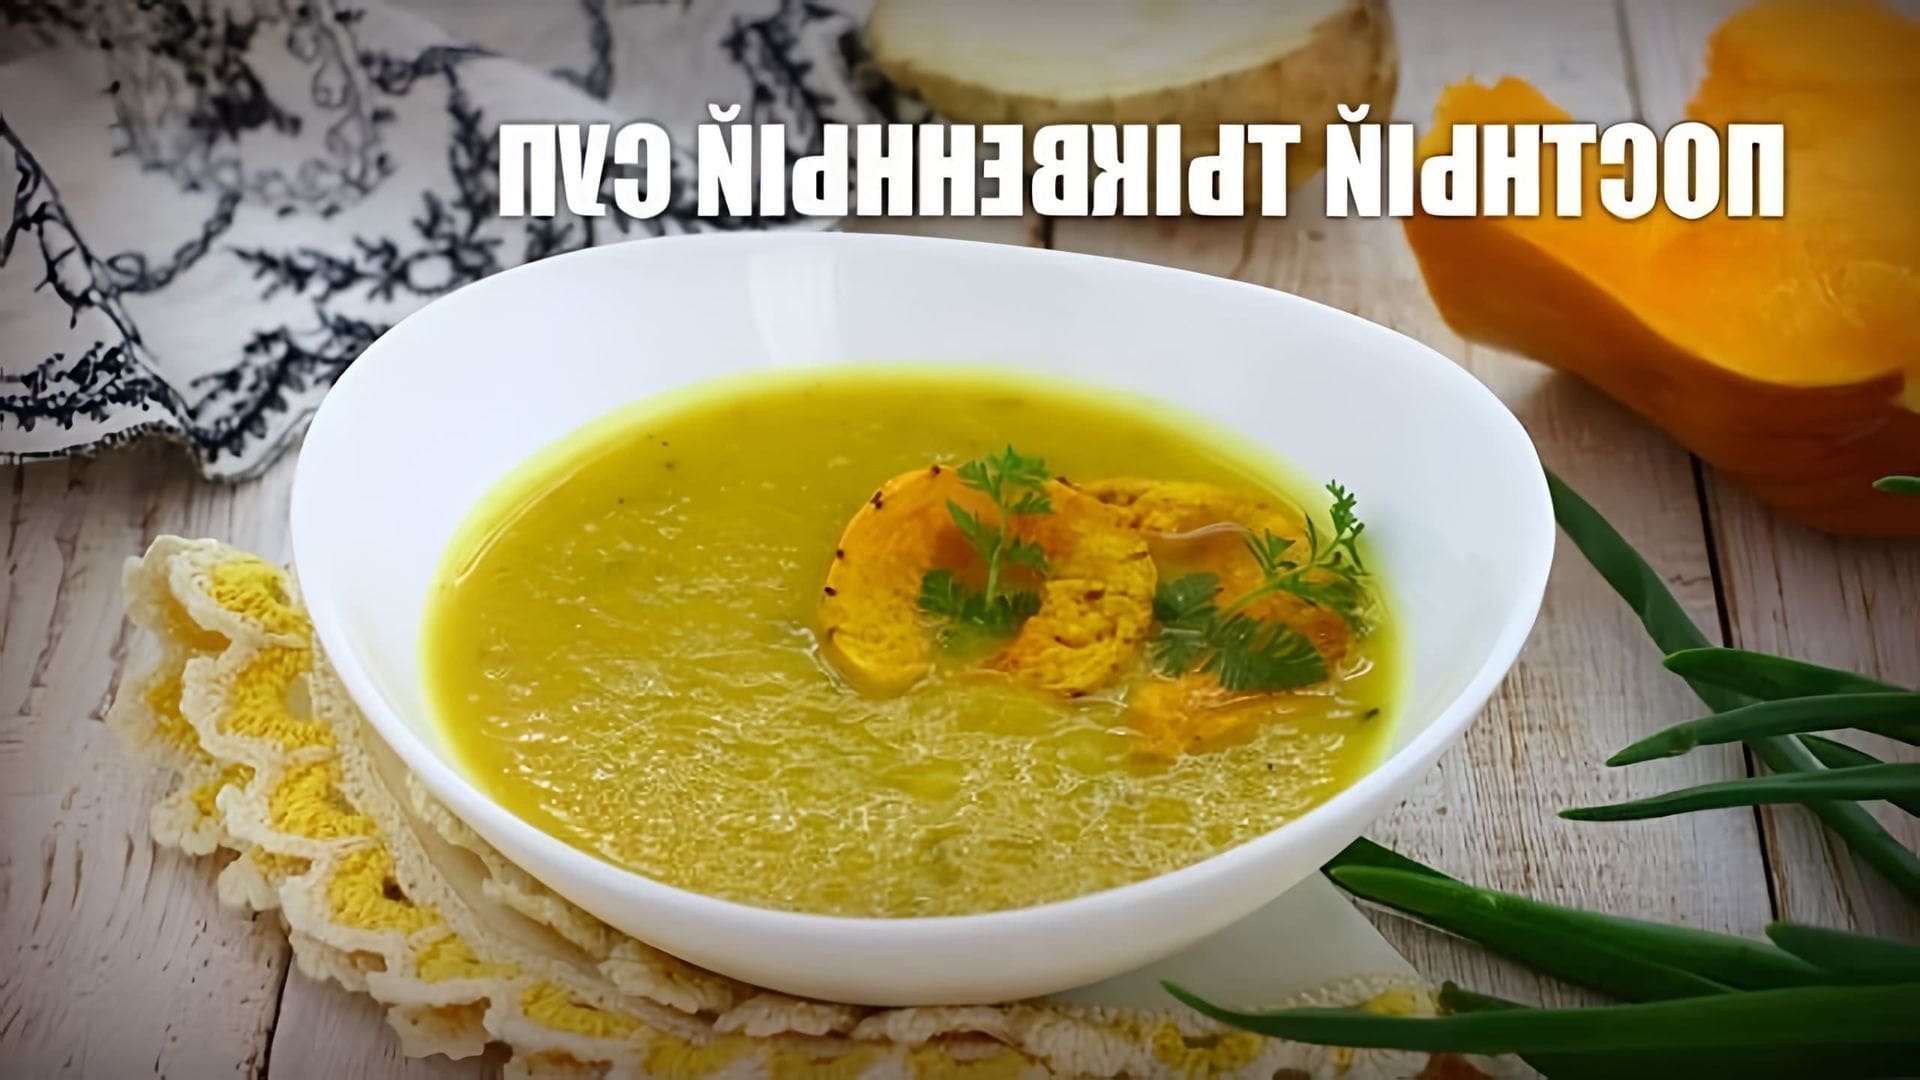 В этом видео демонстрируется рецепт приготовления постного тыквенного супа